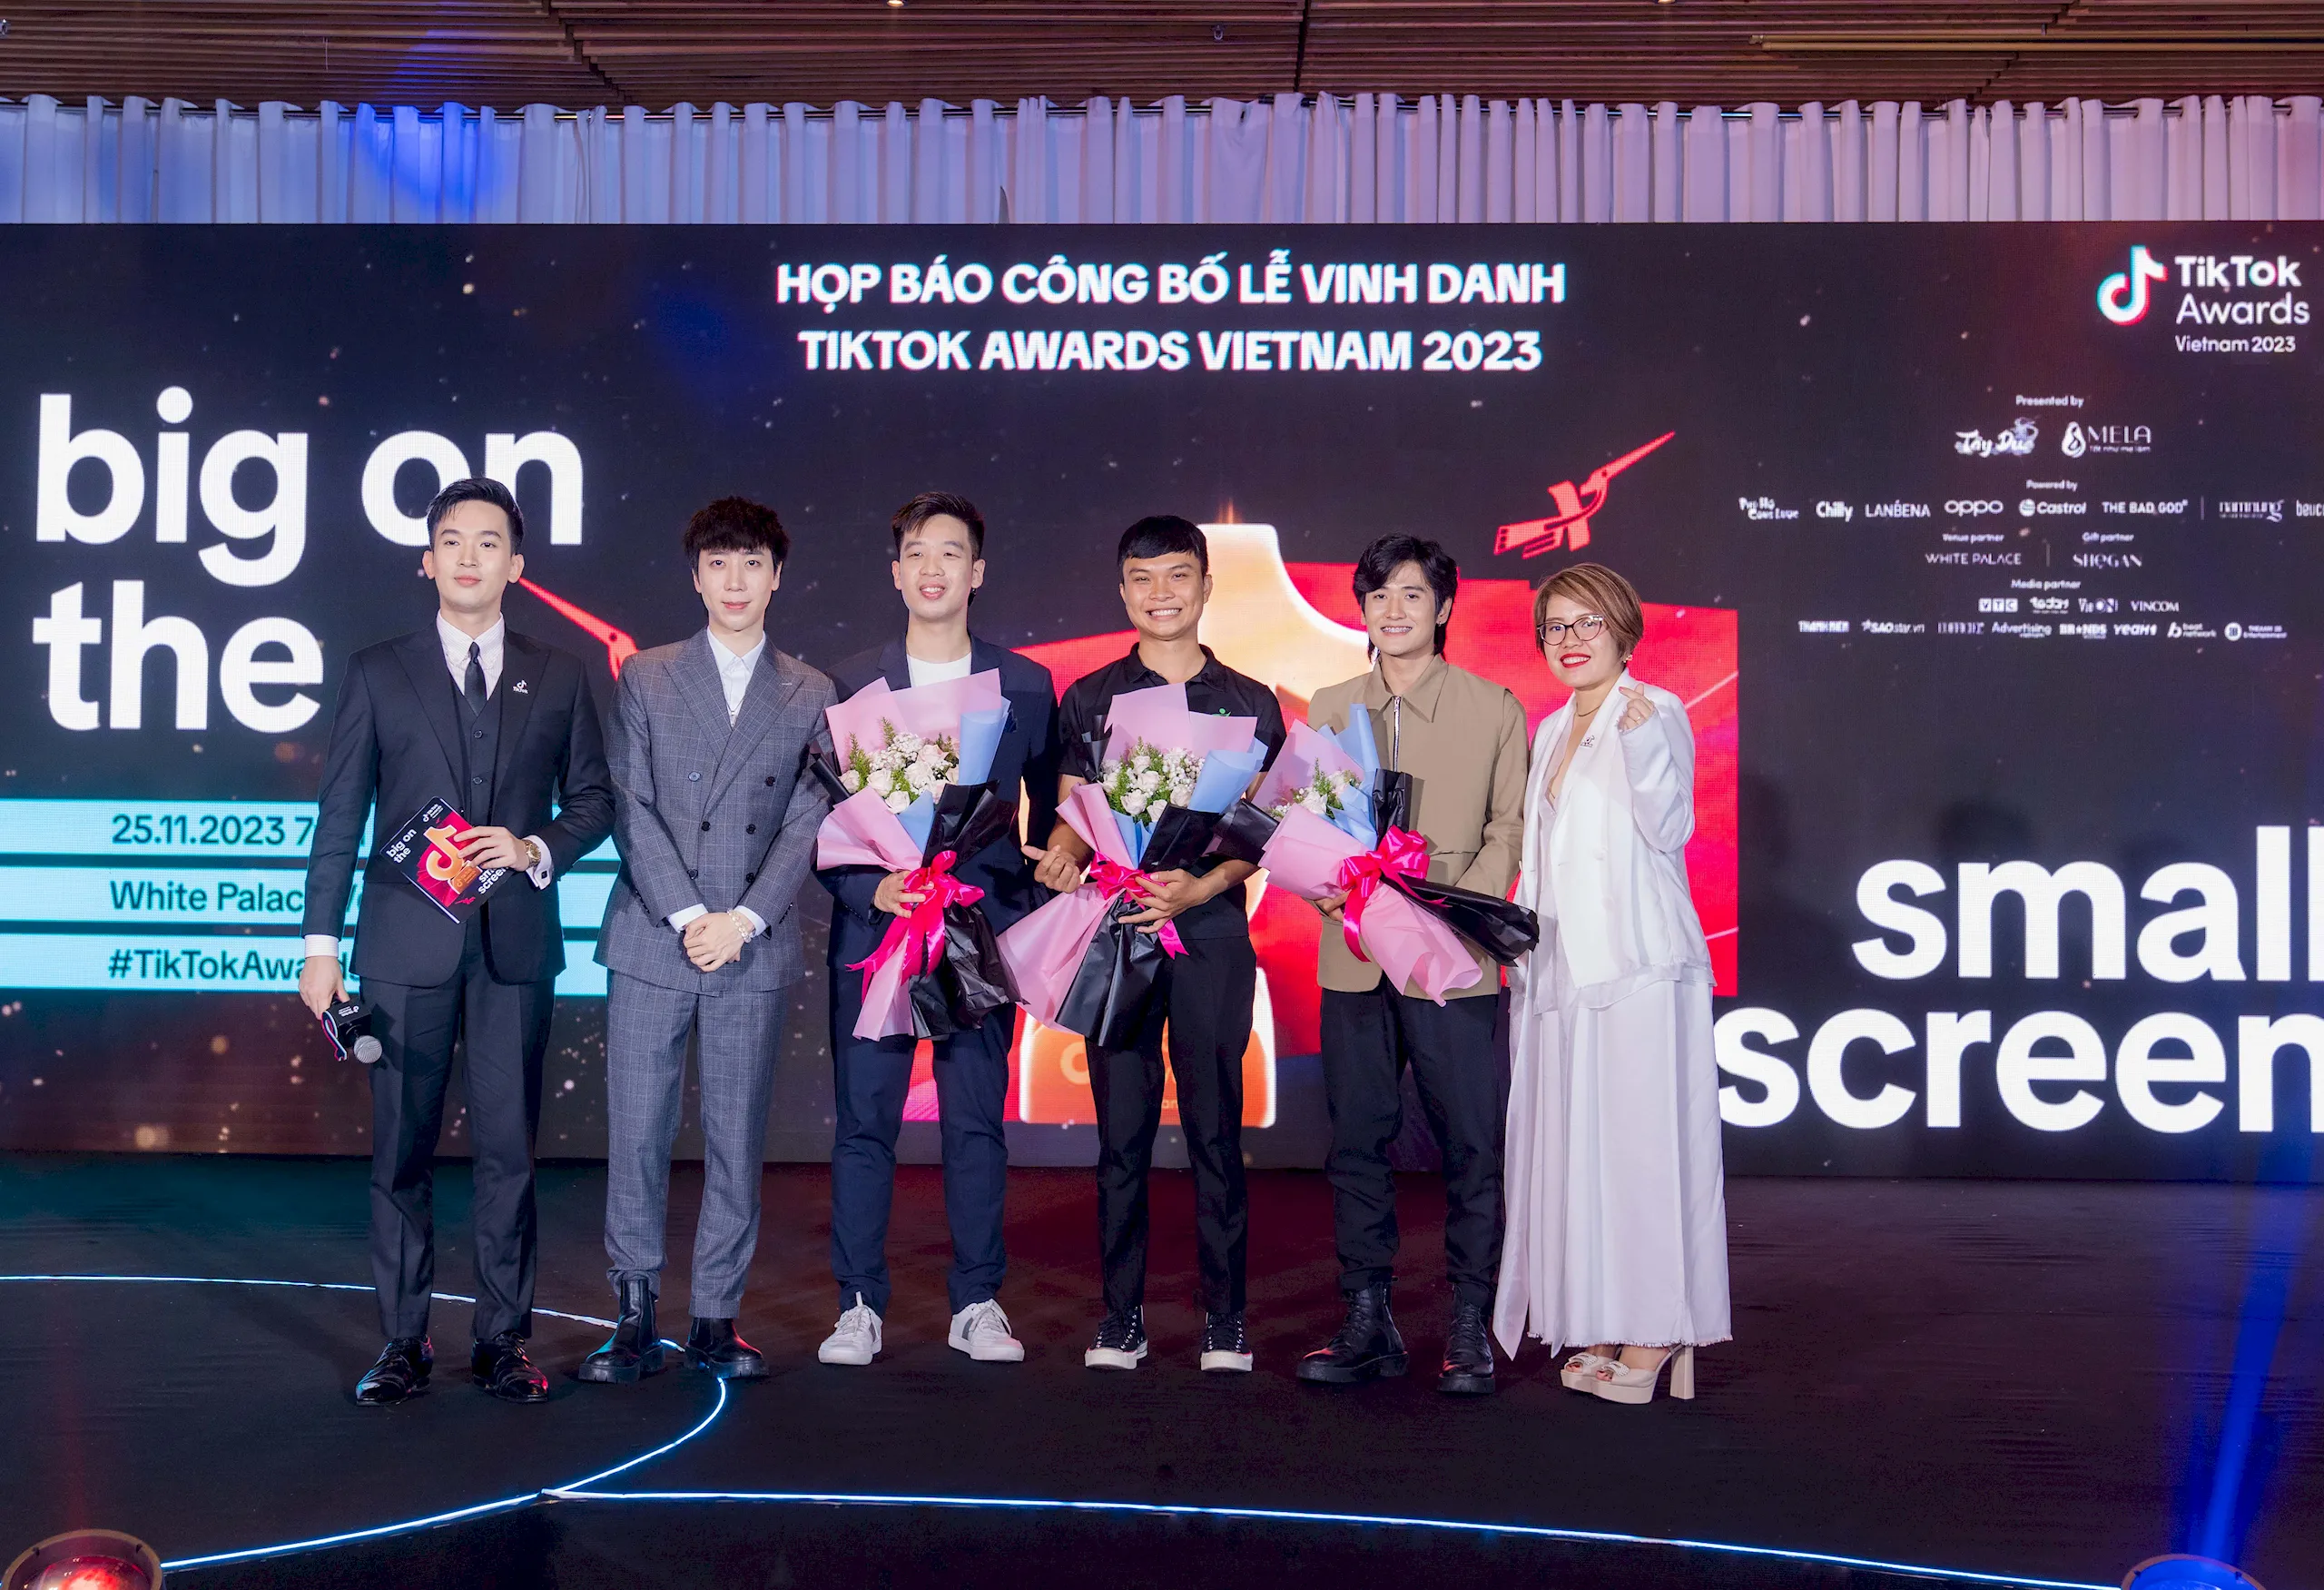 TikTok Awards Việt Nam 2023 chính thức khởi động  với chủ đề “Big On The Small Screen – Vinh danh  thành tựu lớn từ màn hình nhỏ”